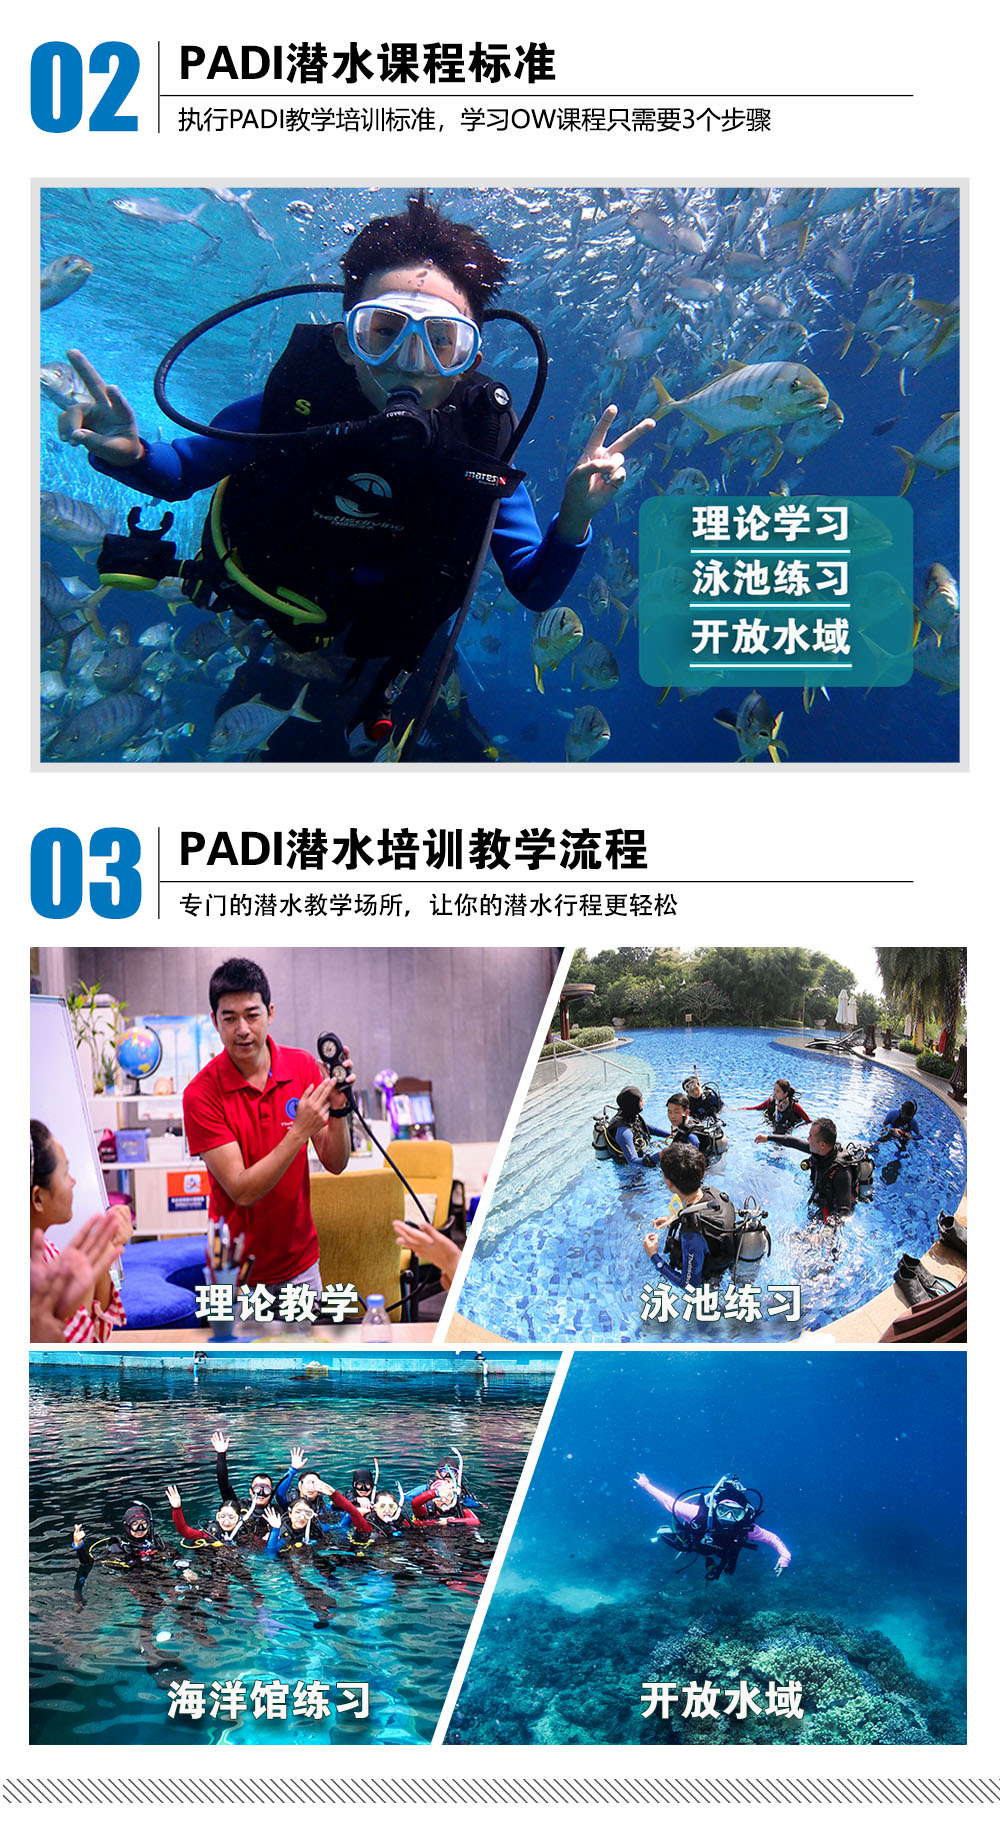 三亚PADI开放水域潜水员课程